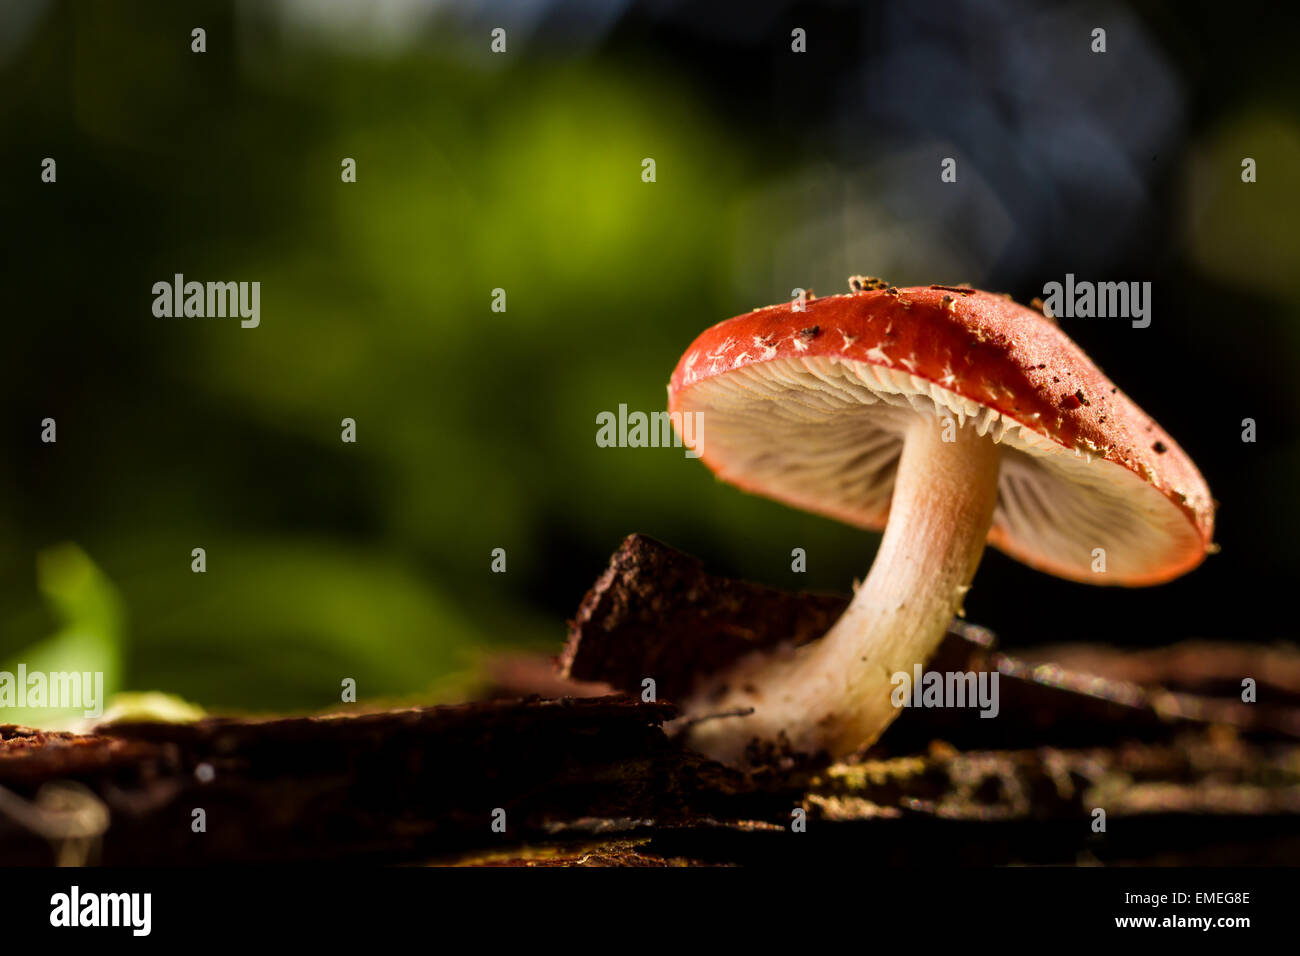 Funghi crescono nel sottobosco durante l'autunno. St Mary's, isole Scilly, Novembre. Foto Stock